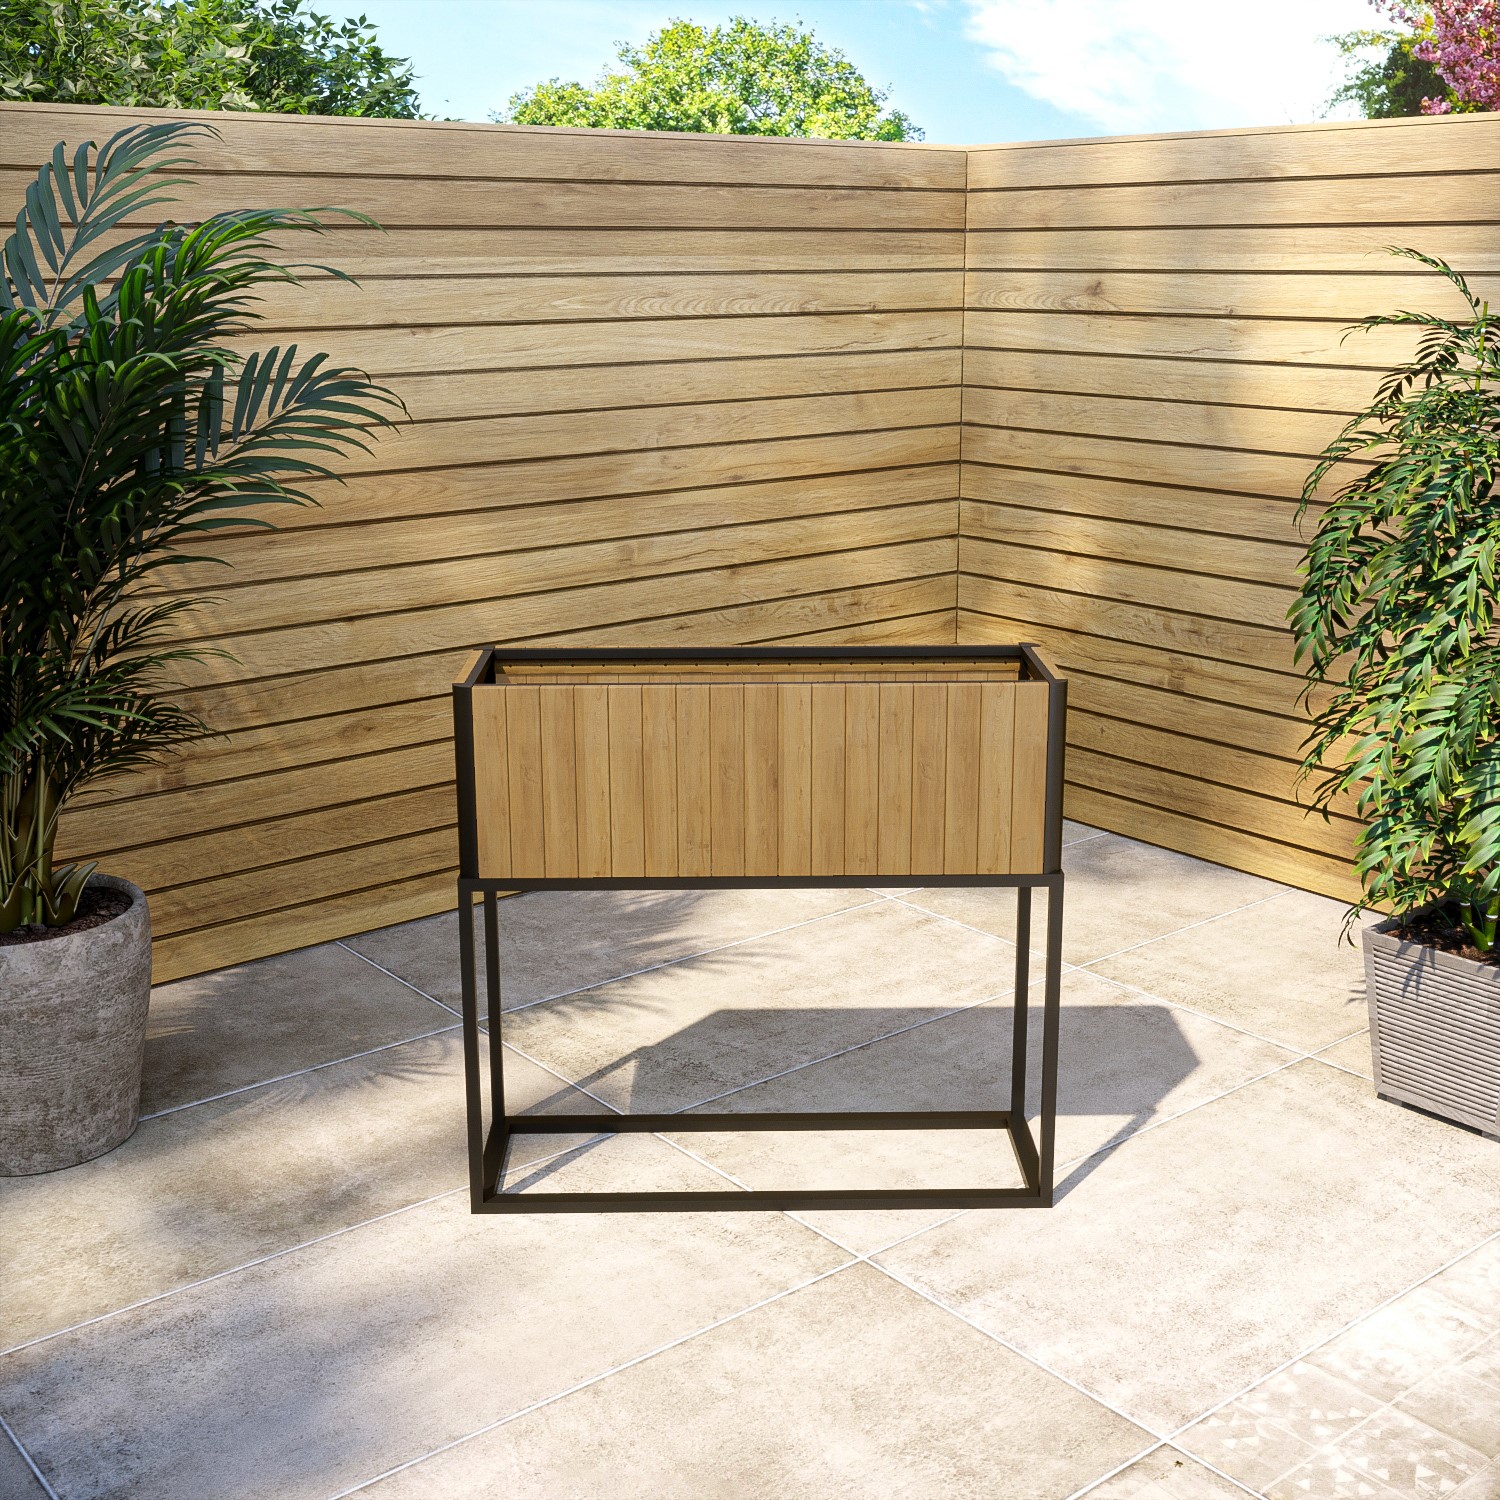 Read more about Rectangular wooden garden planter with metal base 90 x 85cm como